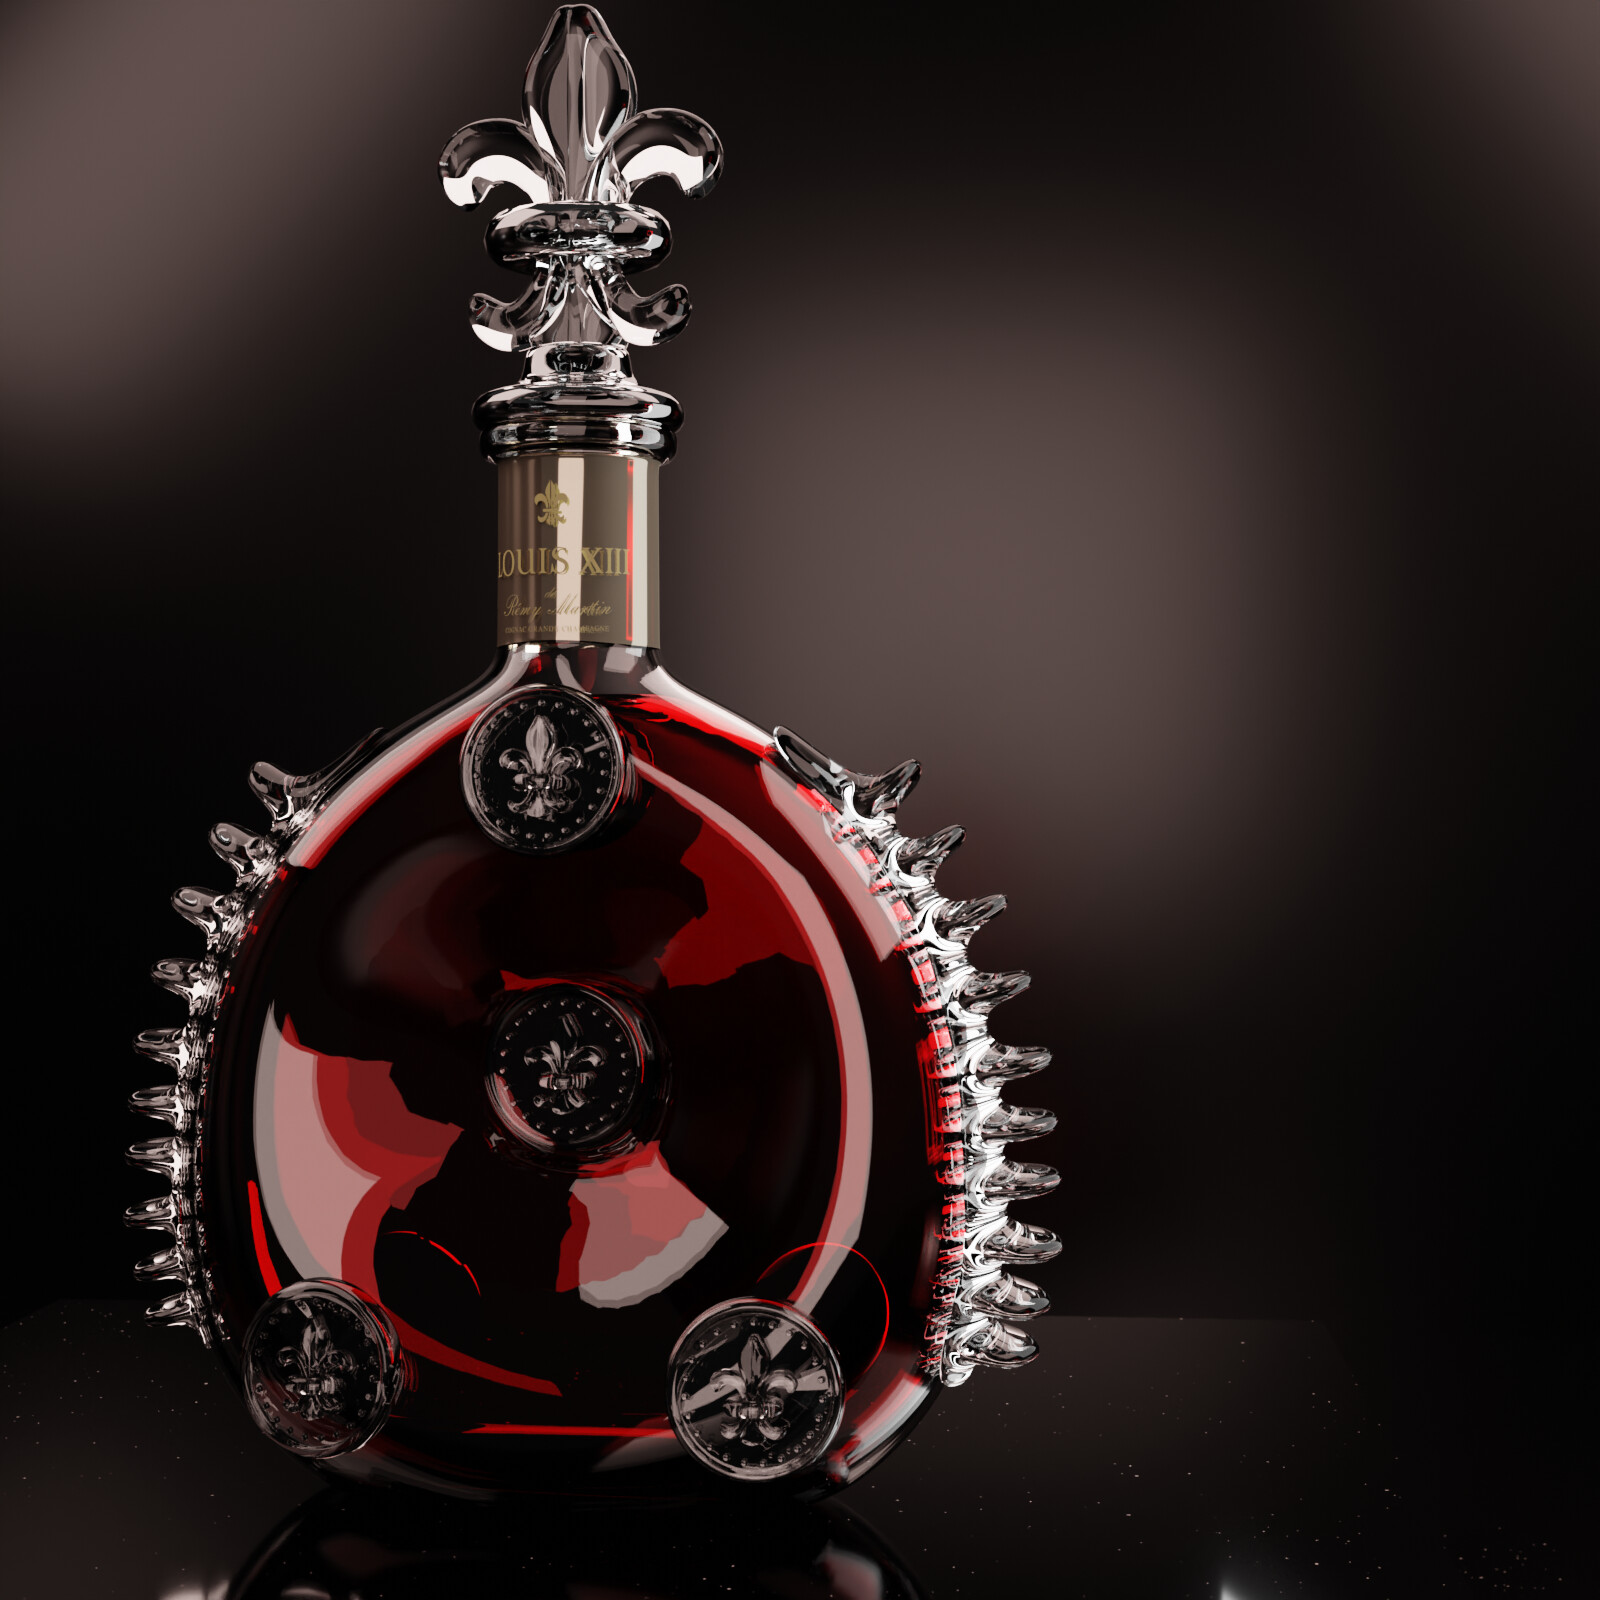 ArtStation - Louis XIII Cognac Decanter